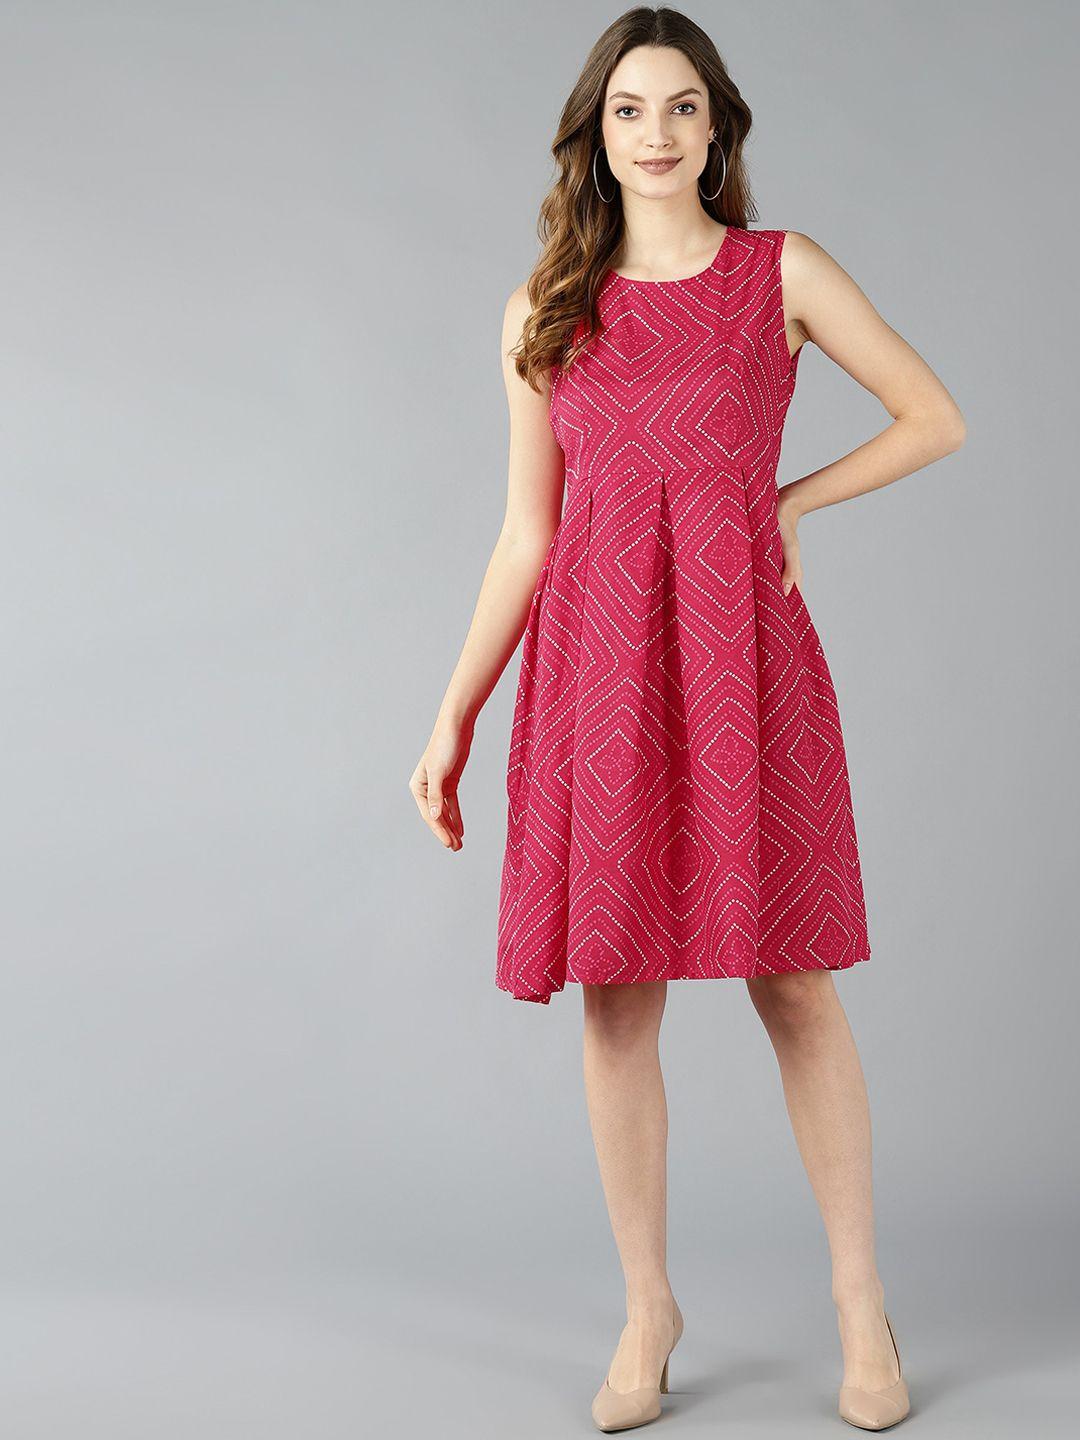 znx-clothing-women-pink-bandhani-printed-dress